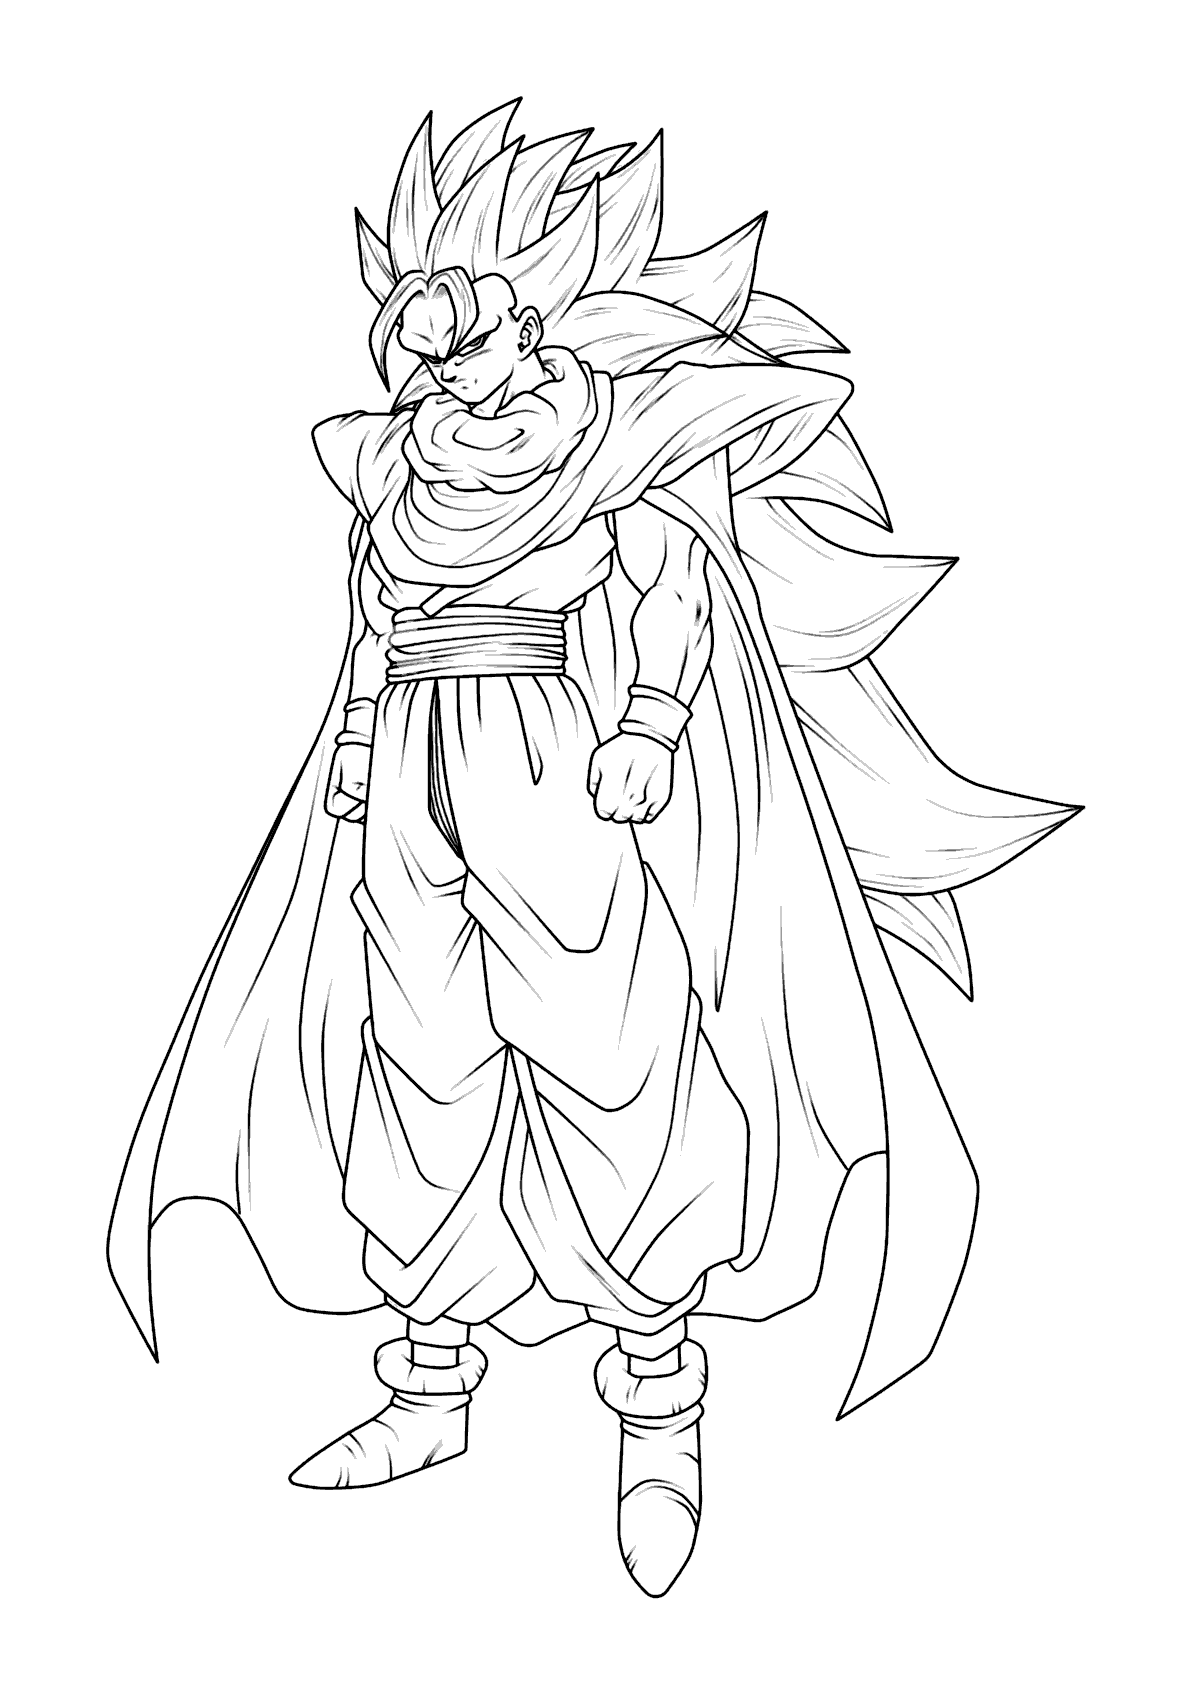 Desenhando Goku Ssj3 para colorir